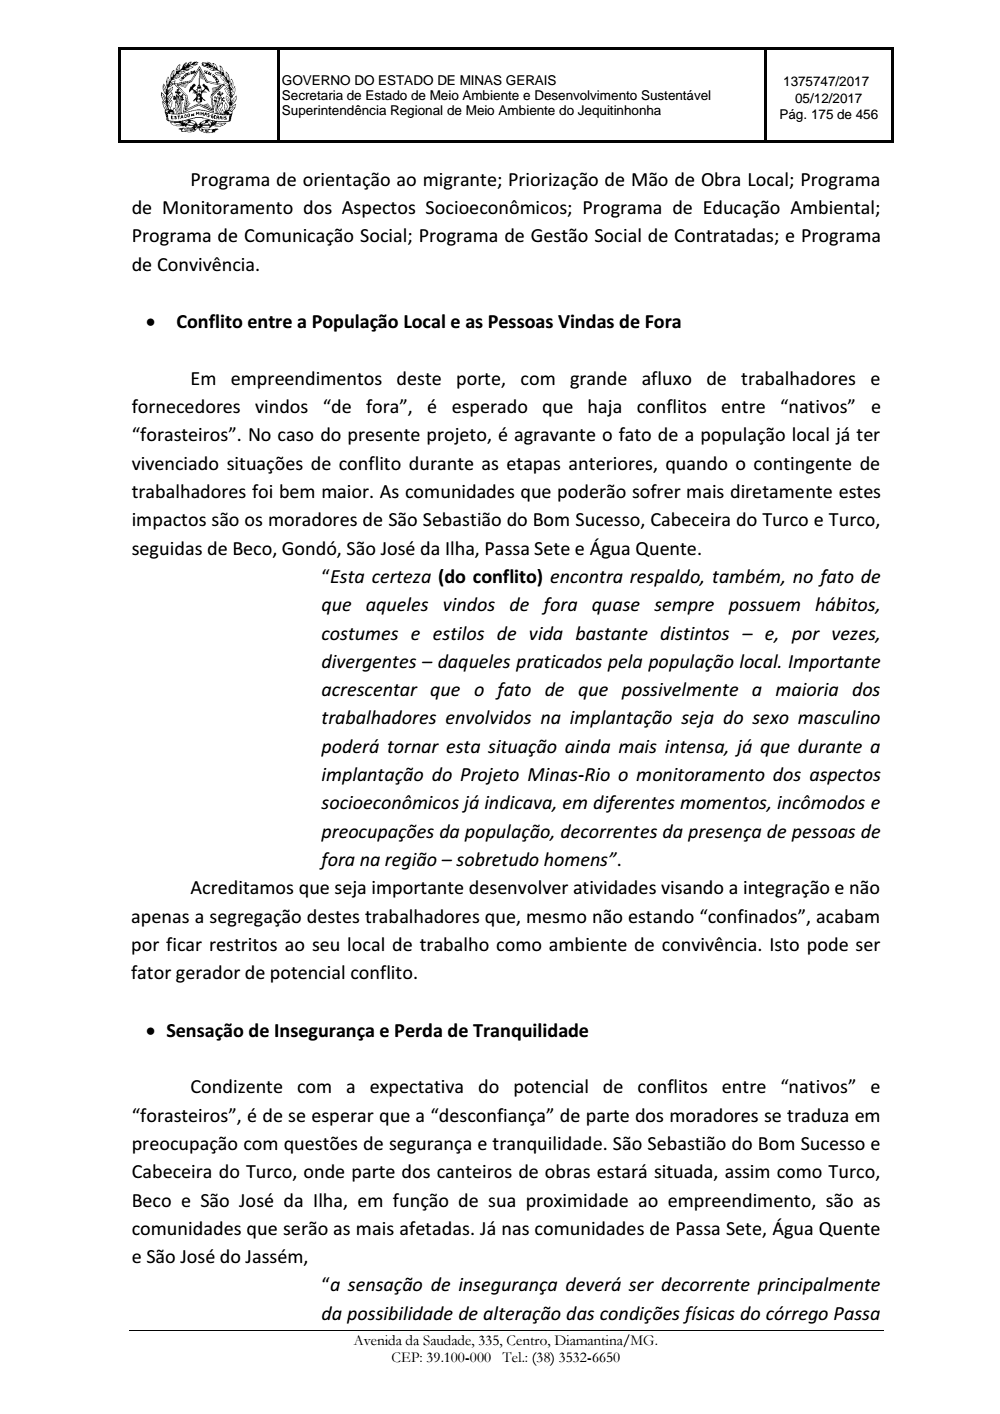 Page 175 from Parecer único da Secretaria de estado de Meio Ambiente e Desenvolvimento Sustentável (SEMAD)